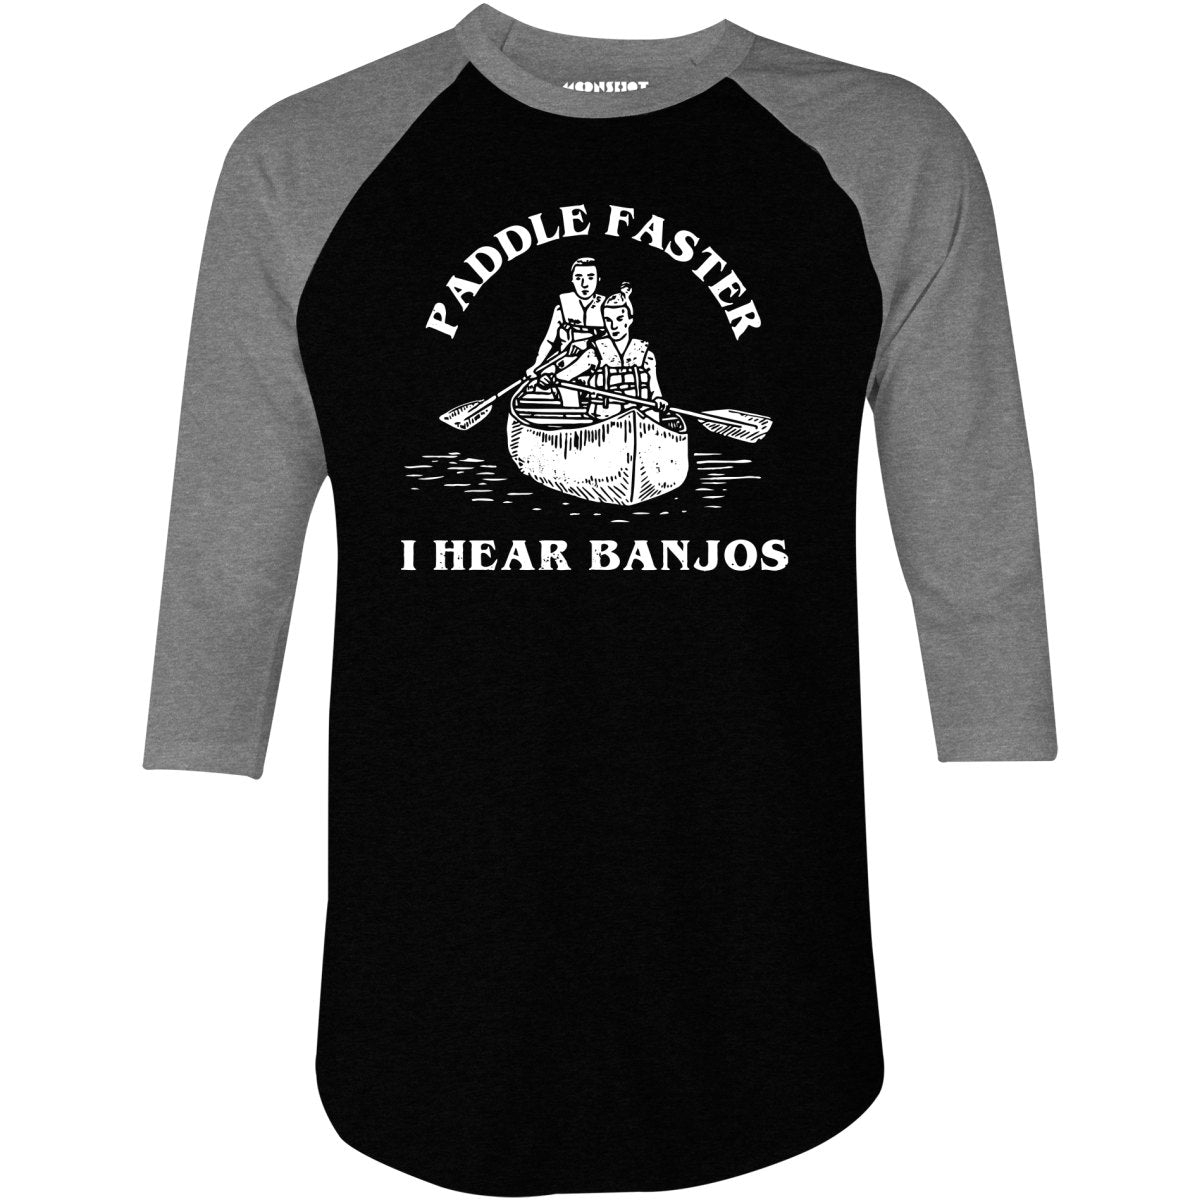 Paddle Faster I Hear Banjos - 3/4 Sleeve Raglan T-Shirt